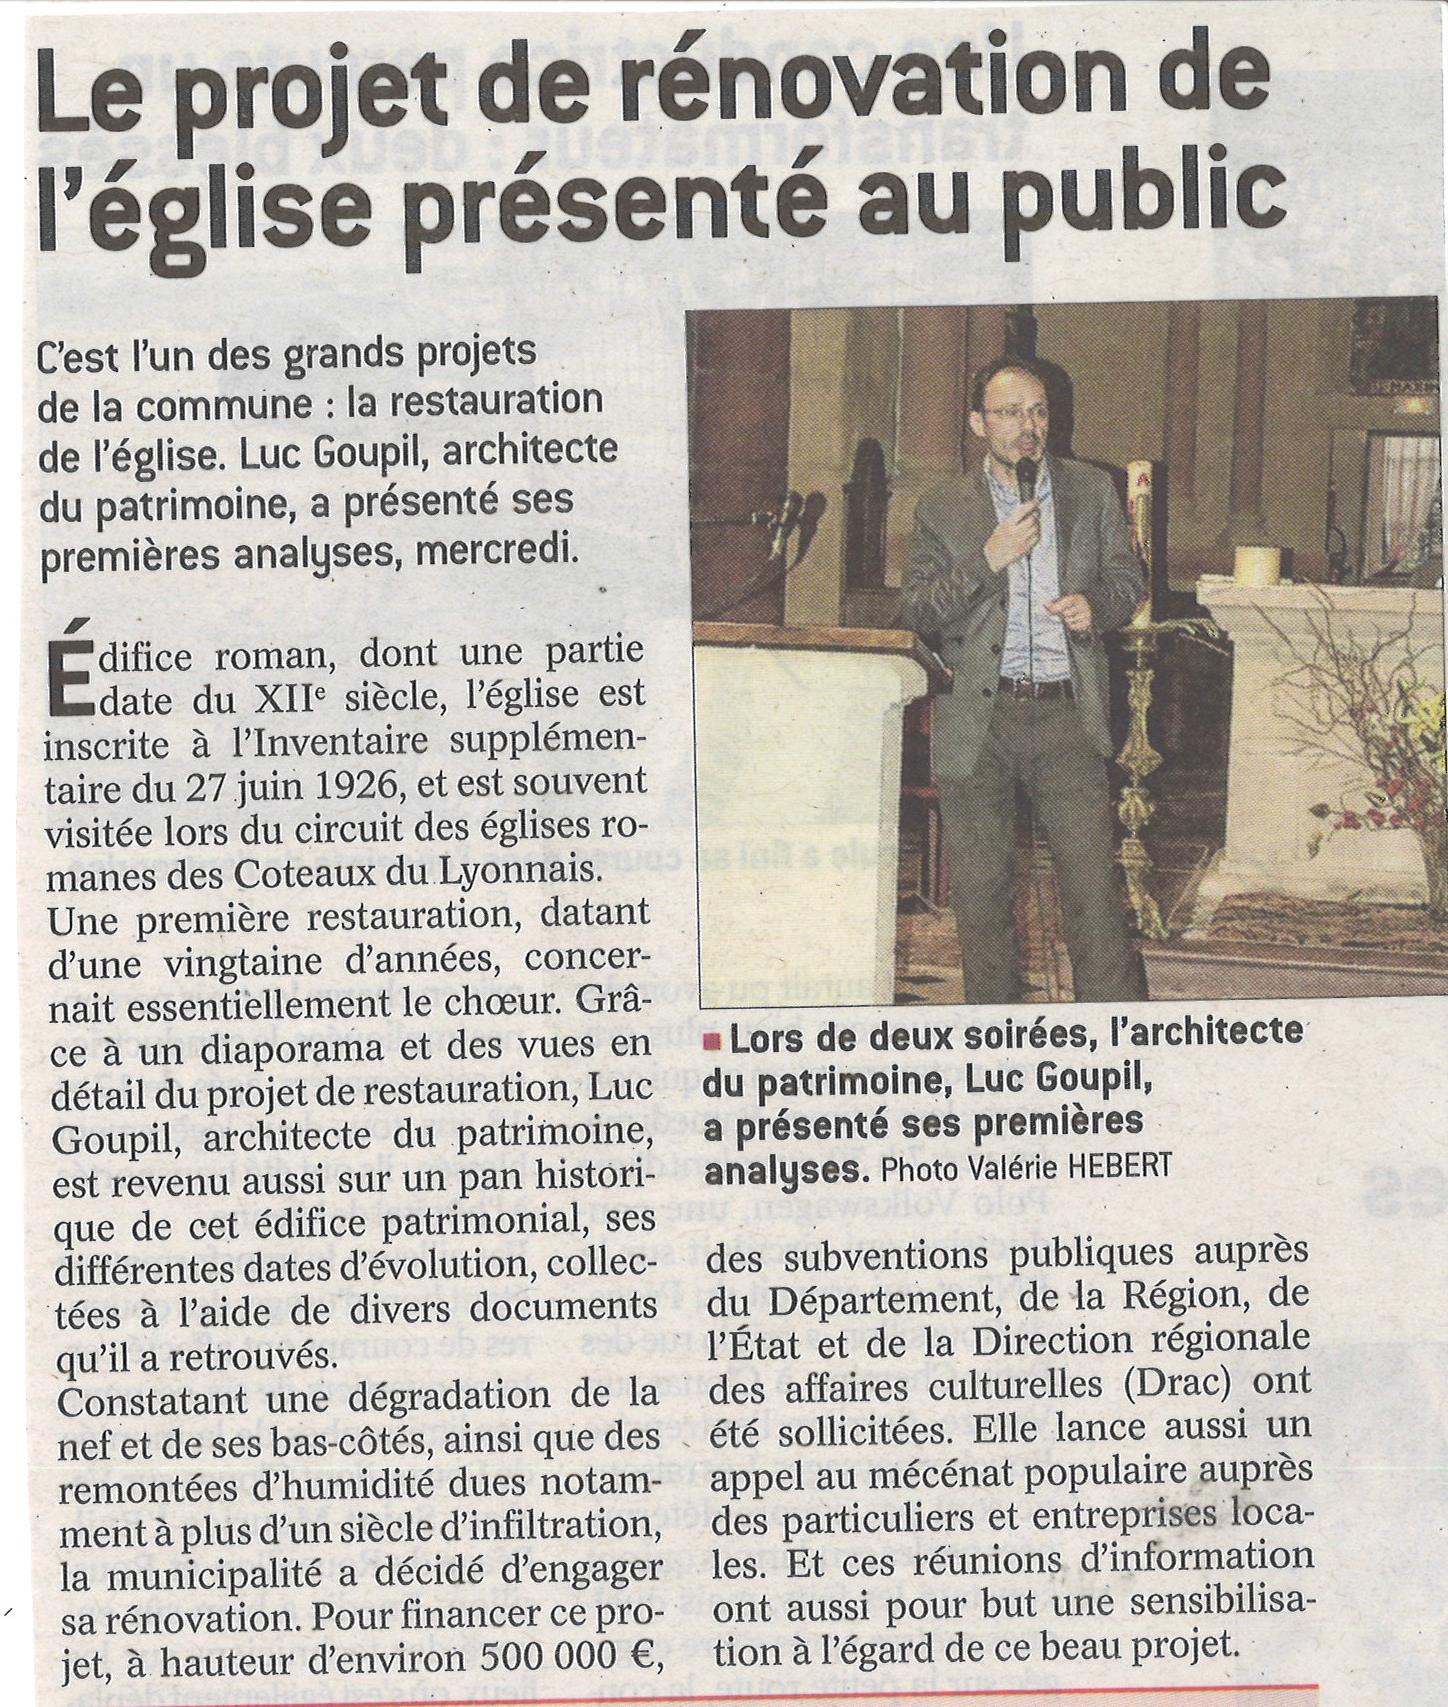 2018-05-08 PROJET DE RENOVATION DE L'EGLISE PRESENTE AU PUBLIC